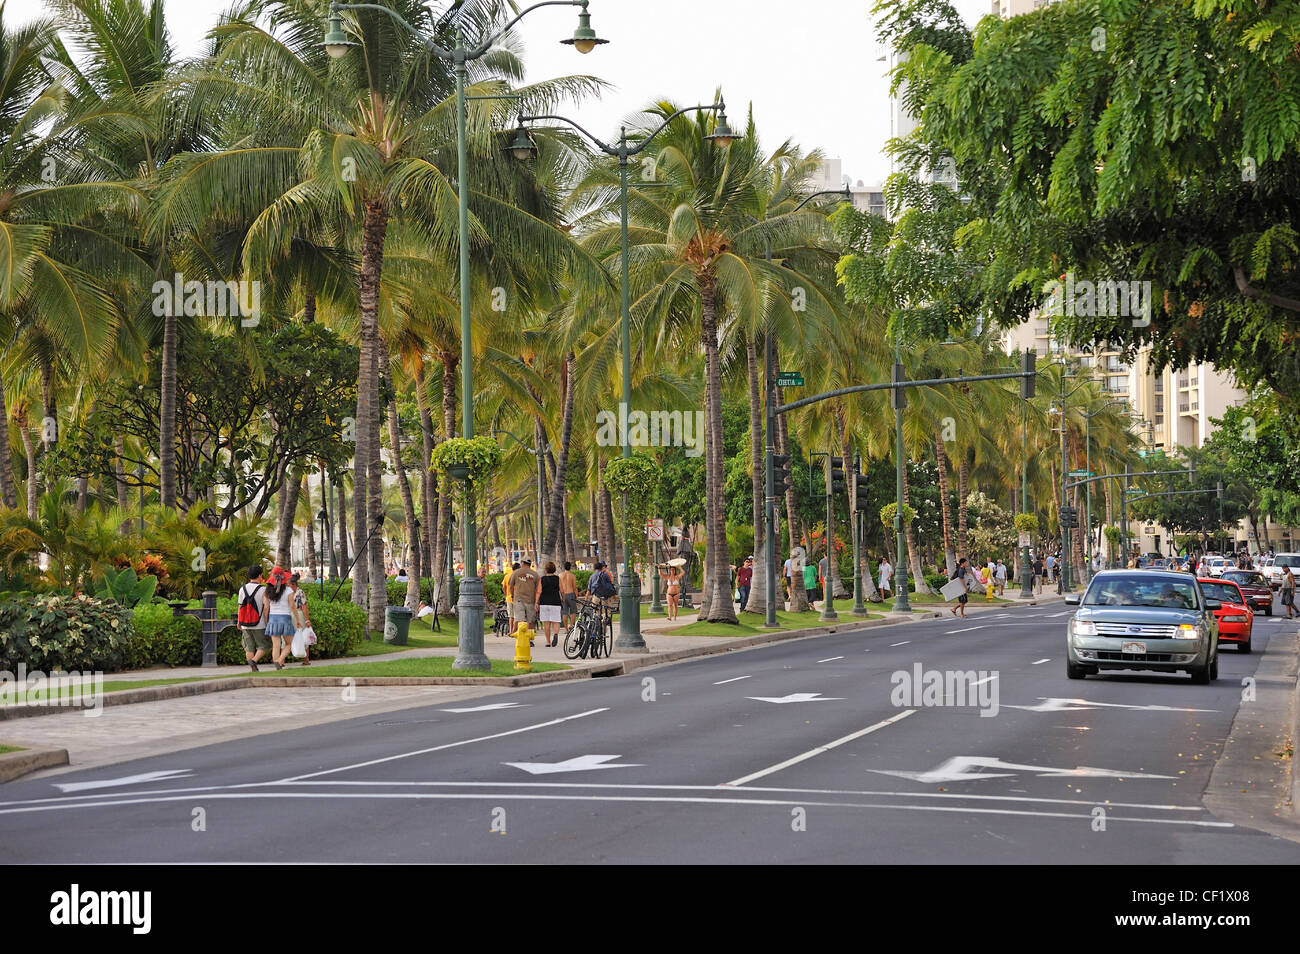 Kalakaua Avenue, Waikiki, Honolulu, Oahu Island, Hawaii Islands, USA Stock Photo